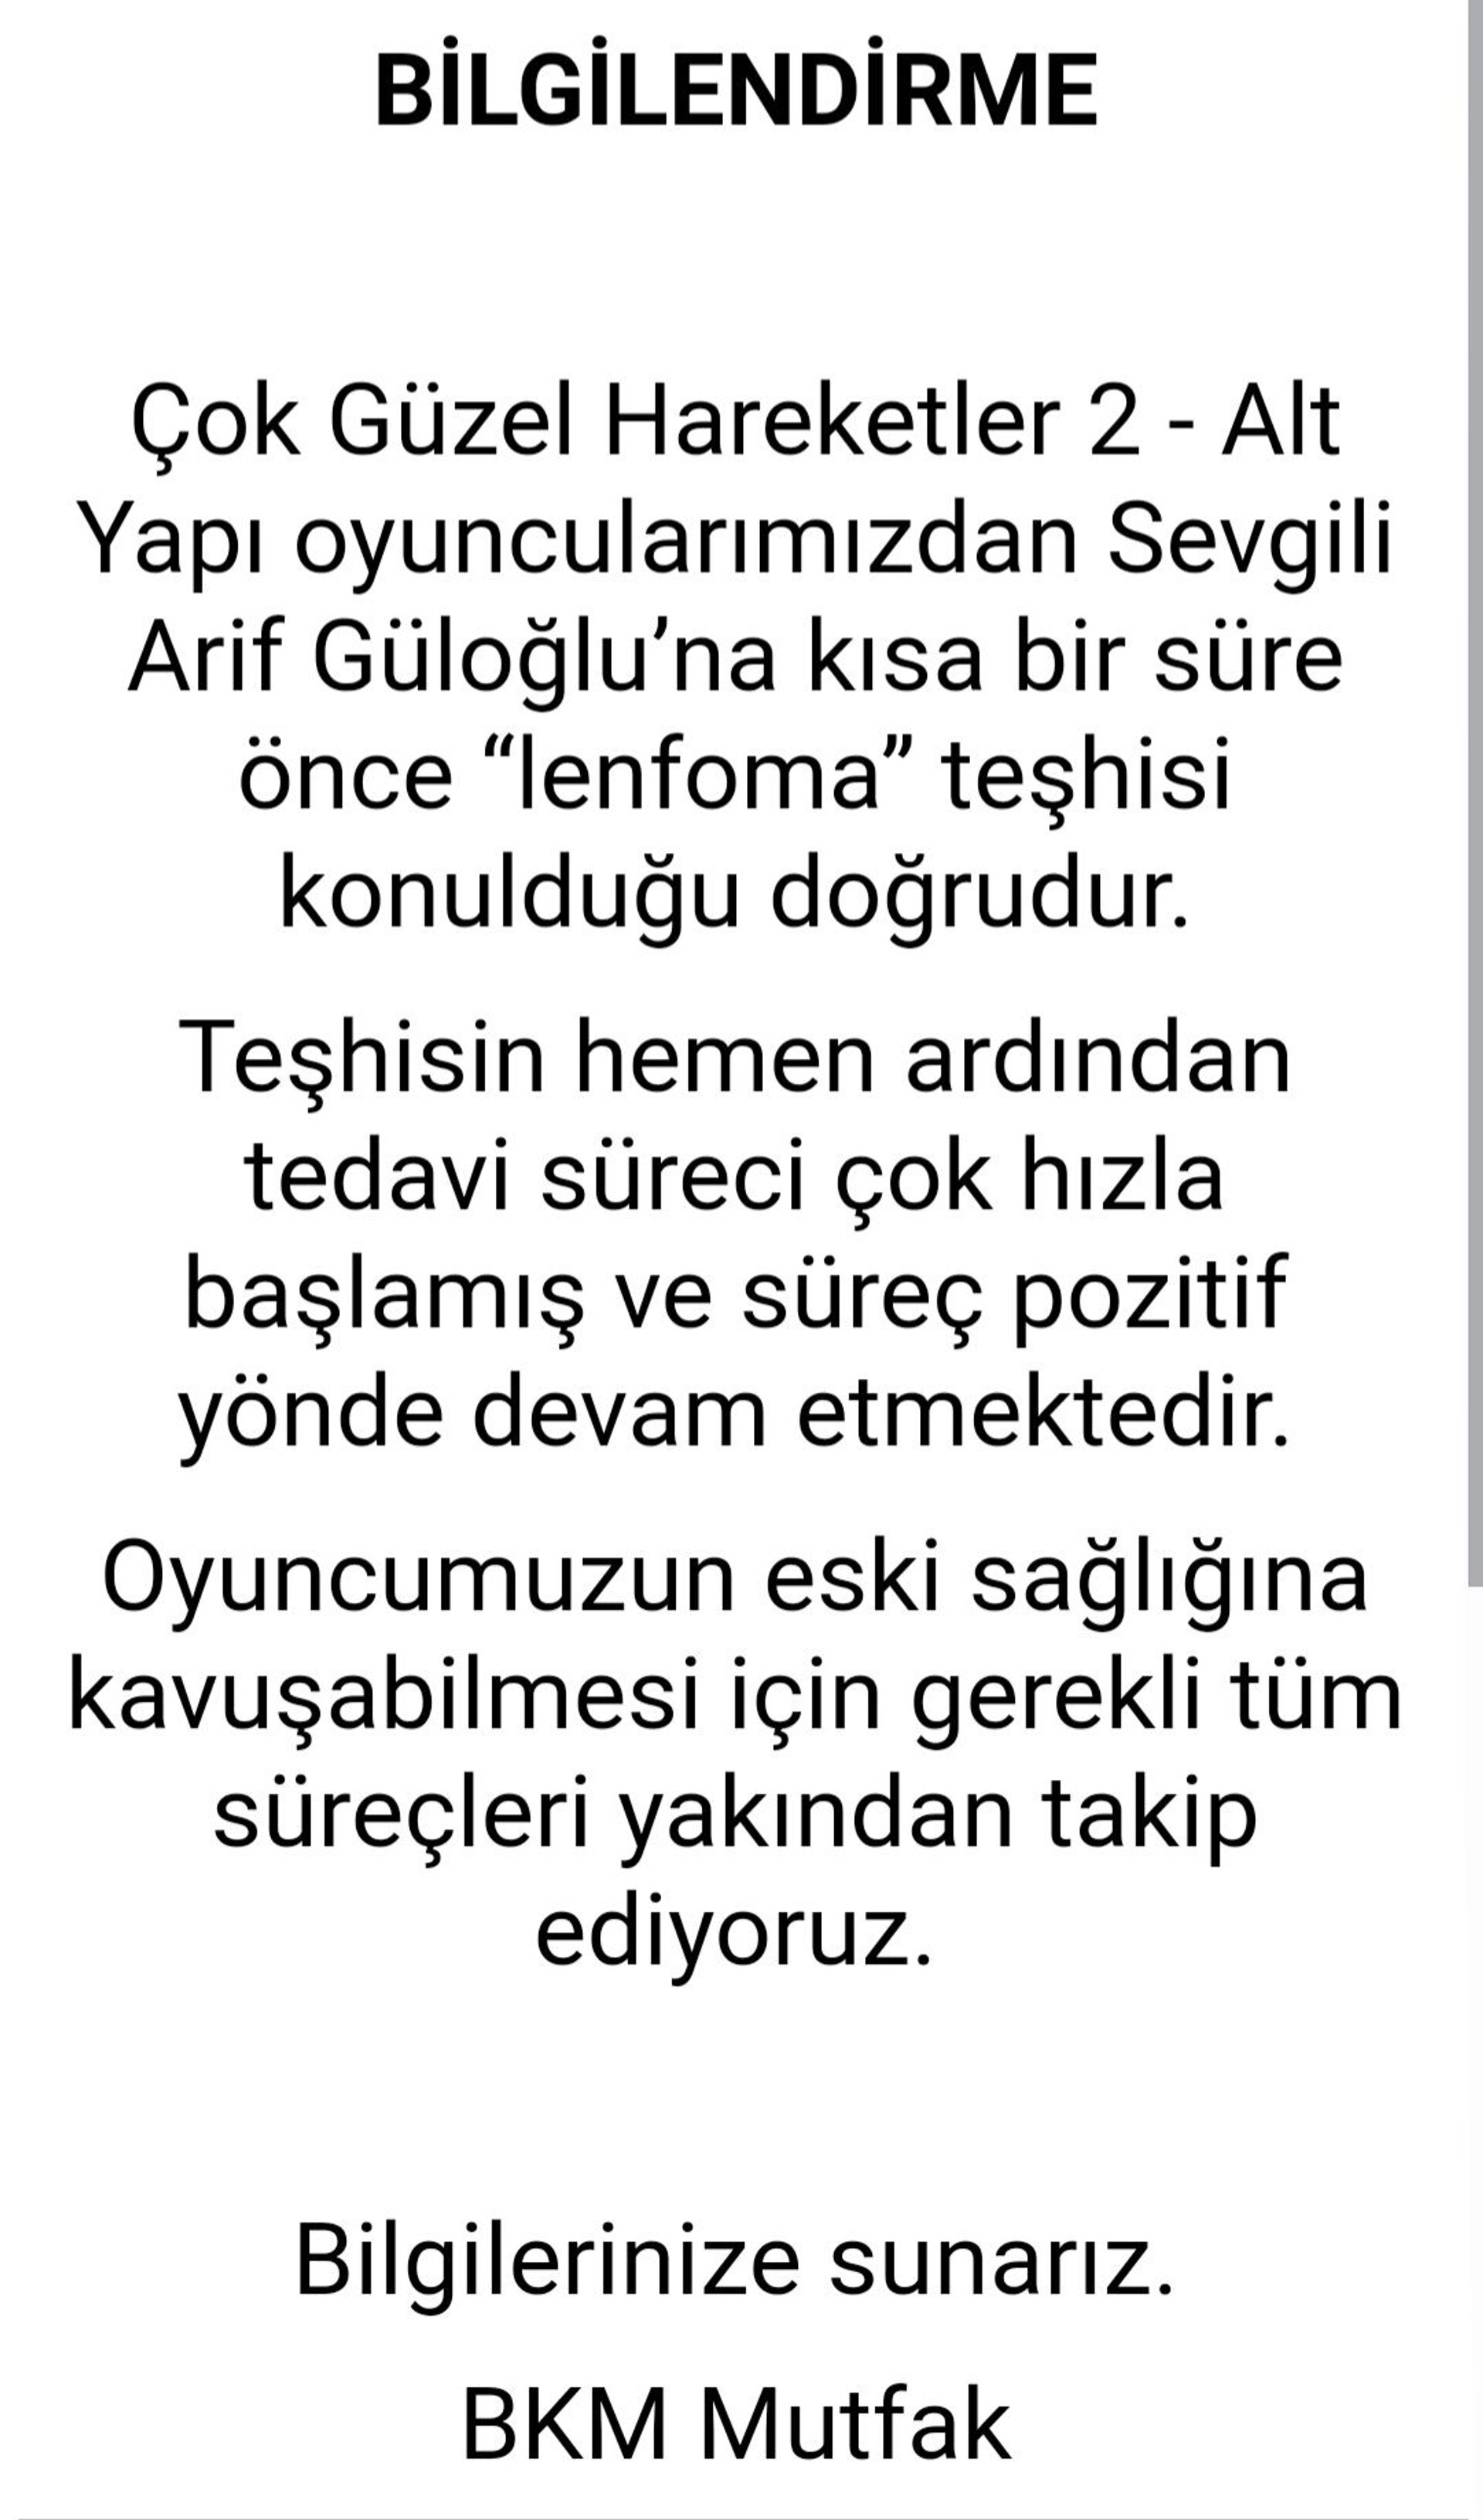 Çok Güzel Hareketler 2'nin oyuncularından Arif Güloğlu kansere yakalandı - Sputnik Türkiye, 1920, 29.03.2021